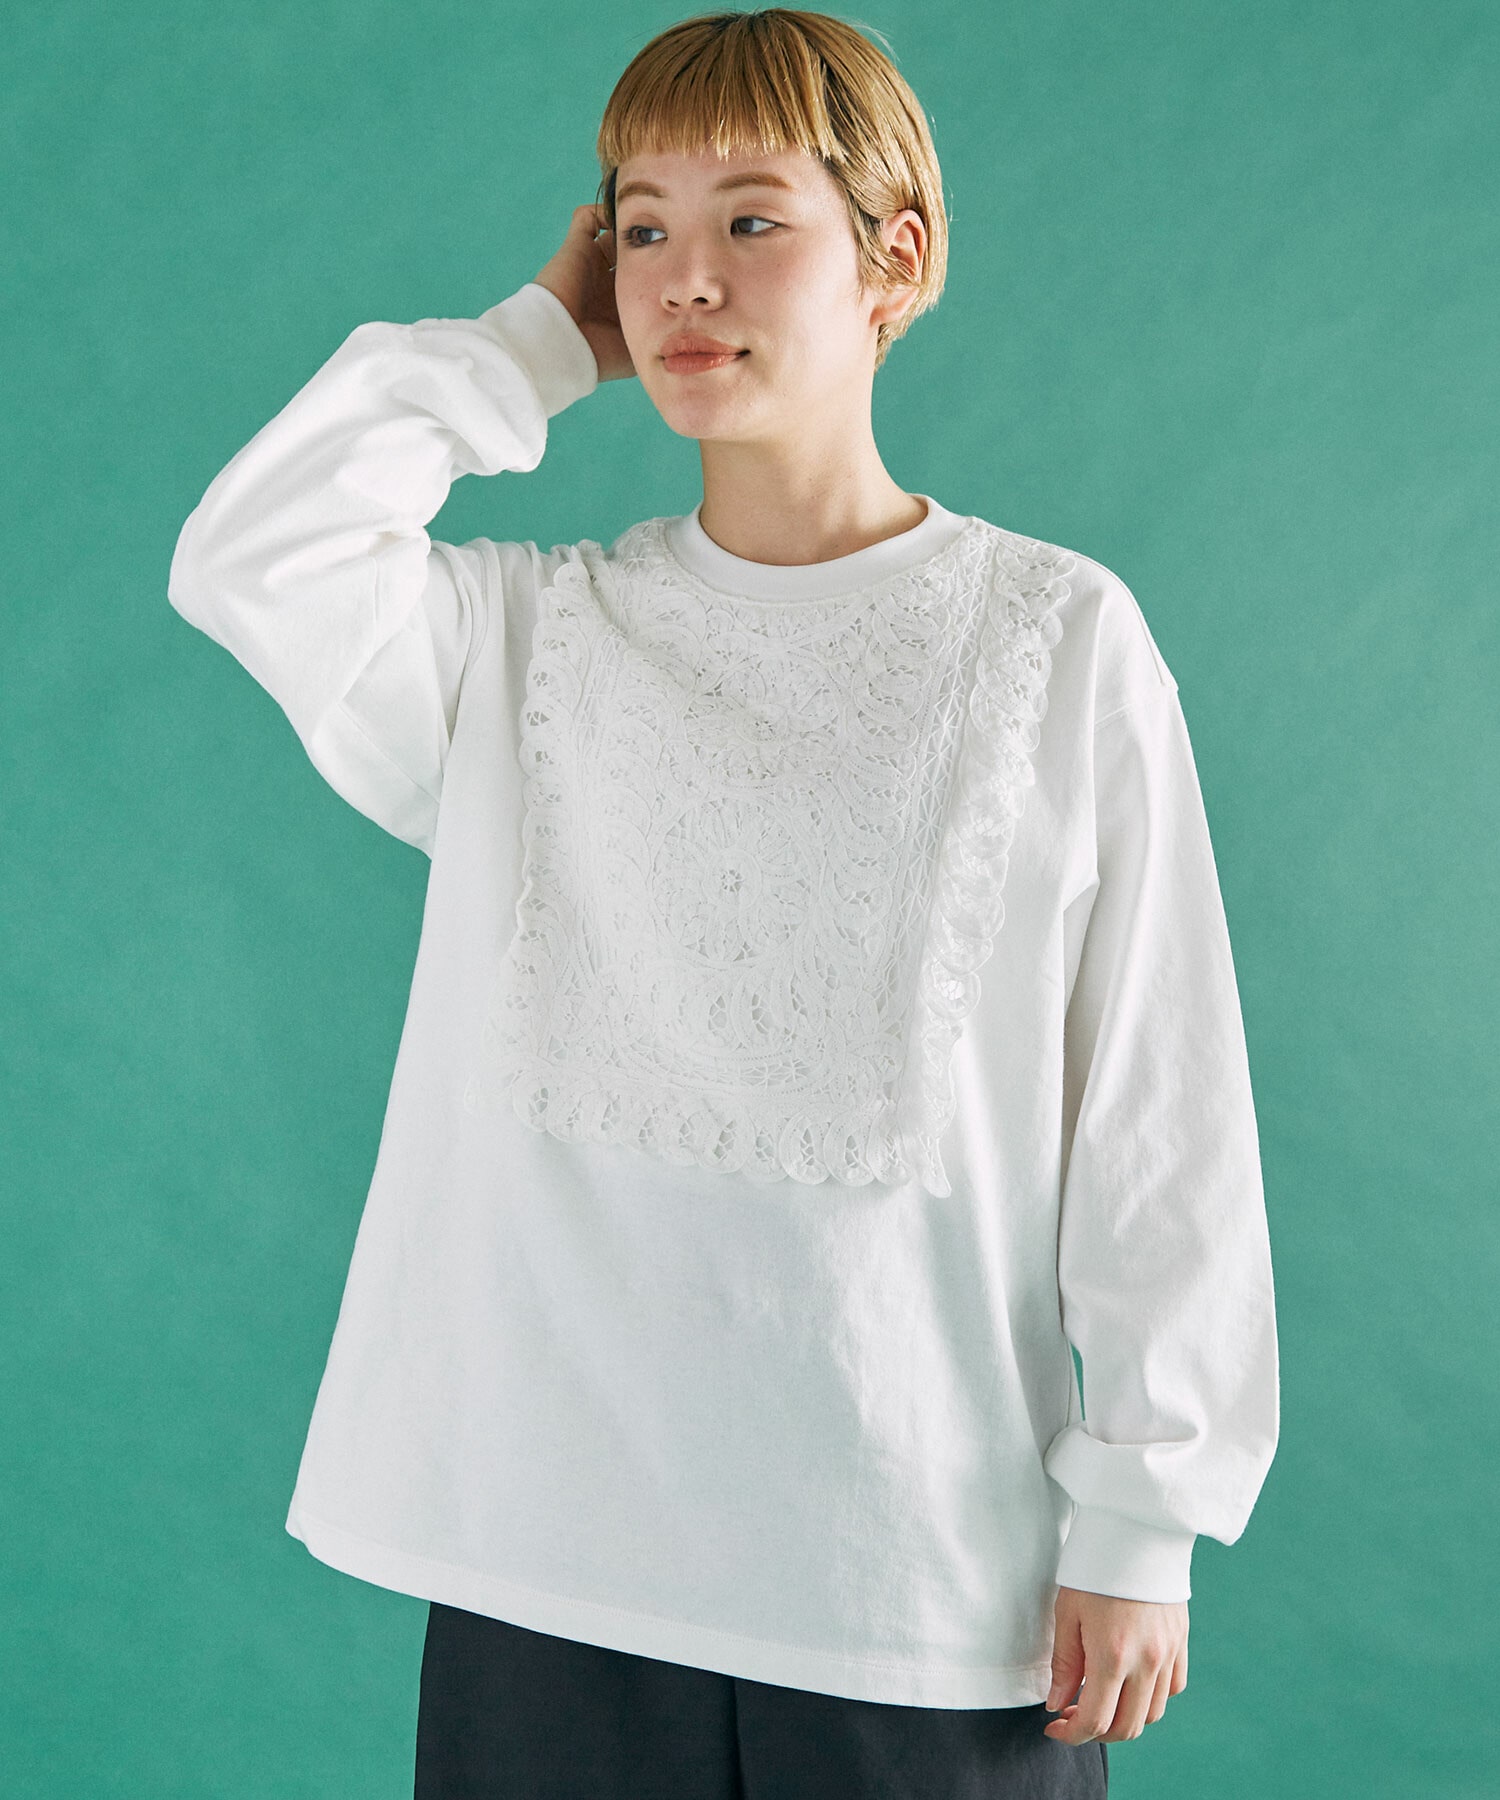 AMBIDEX Store △○バテンレース BIB Tシャツ(F WHITE): FLAT-cic-HATENA